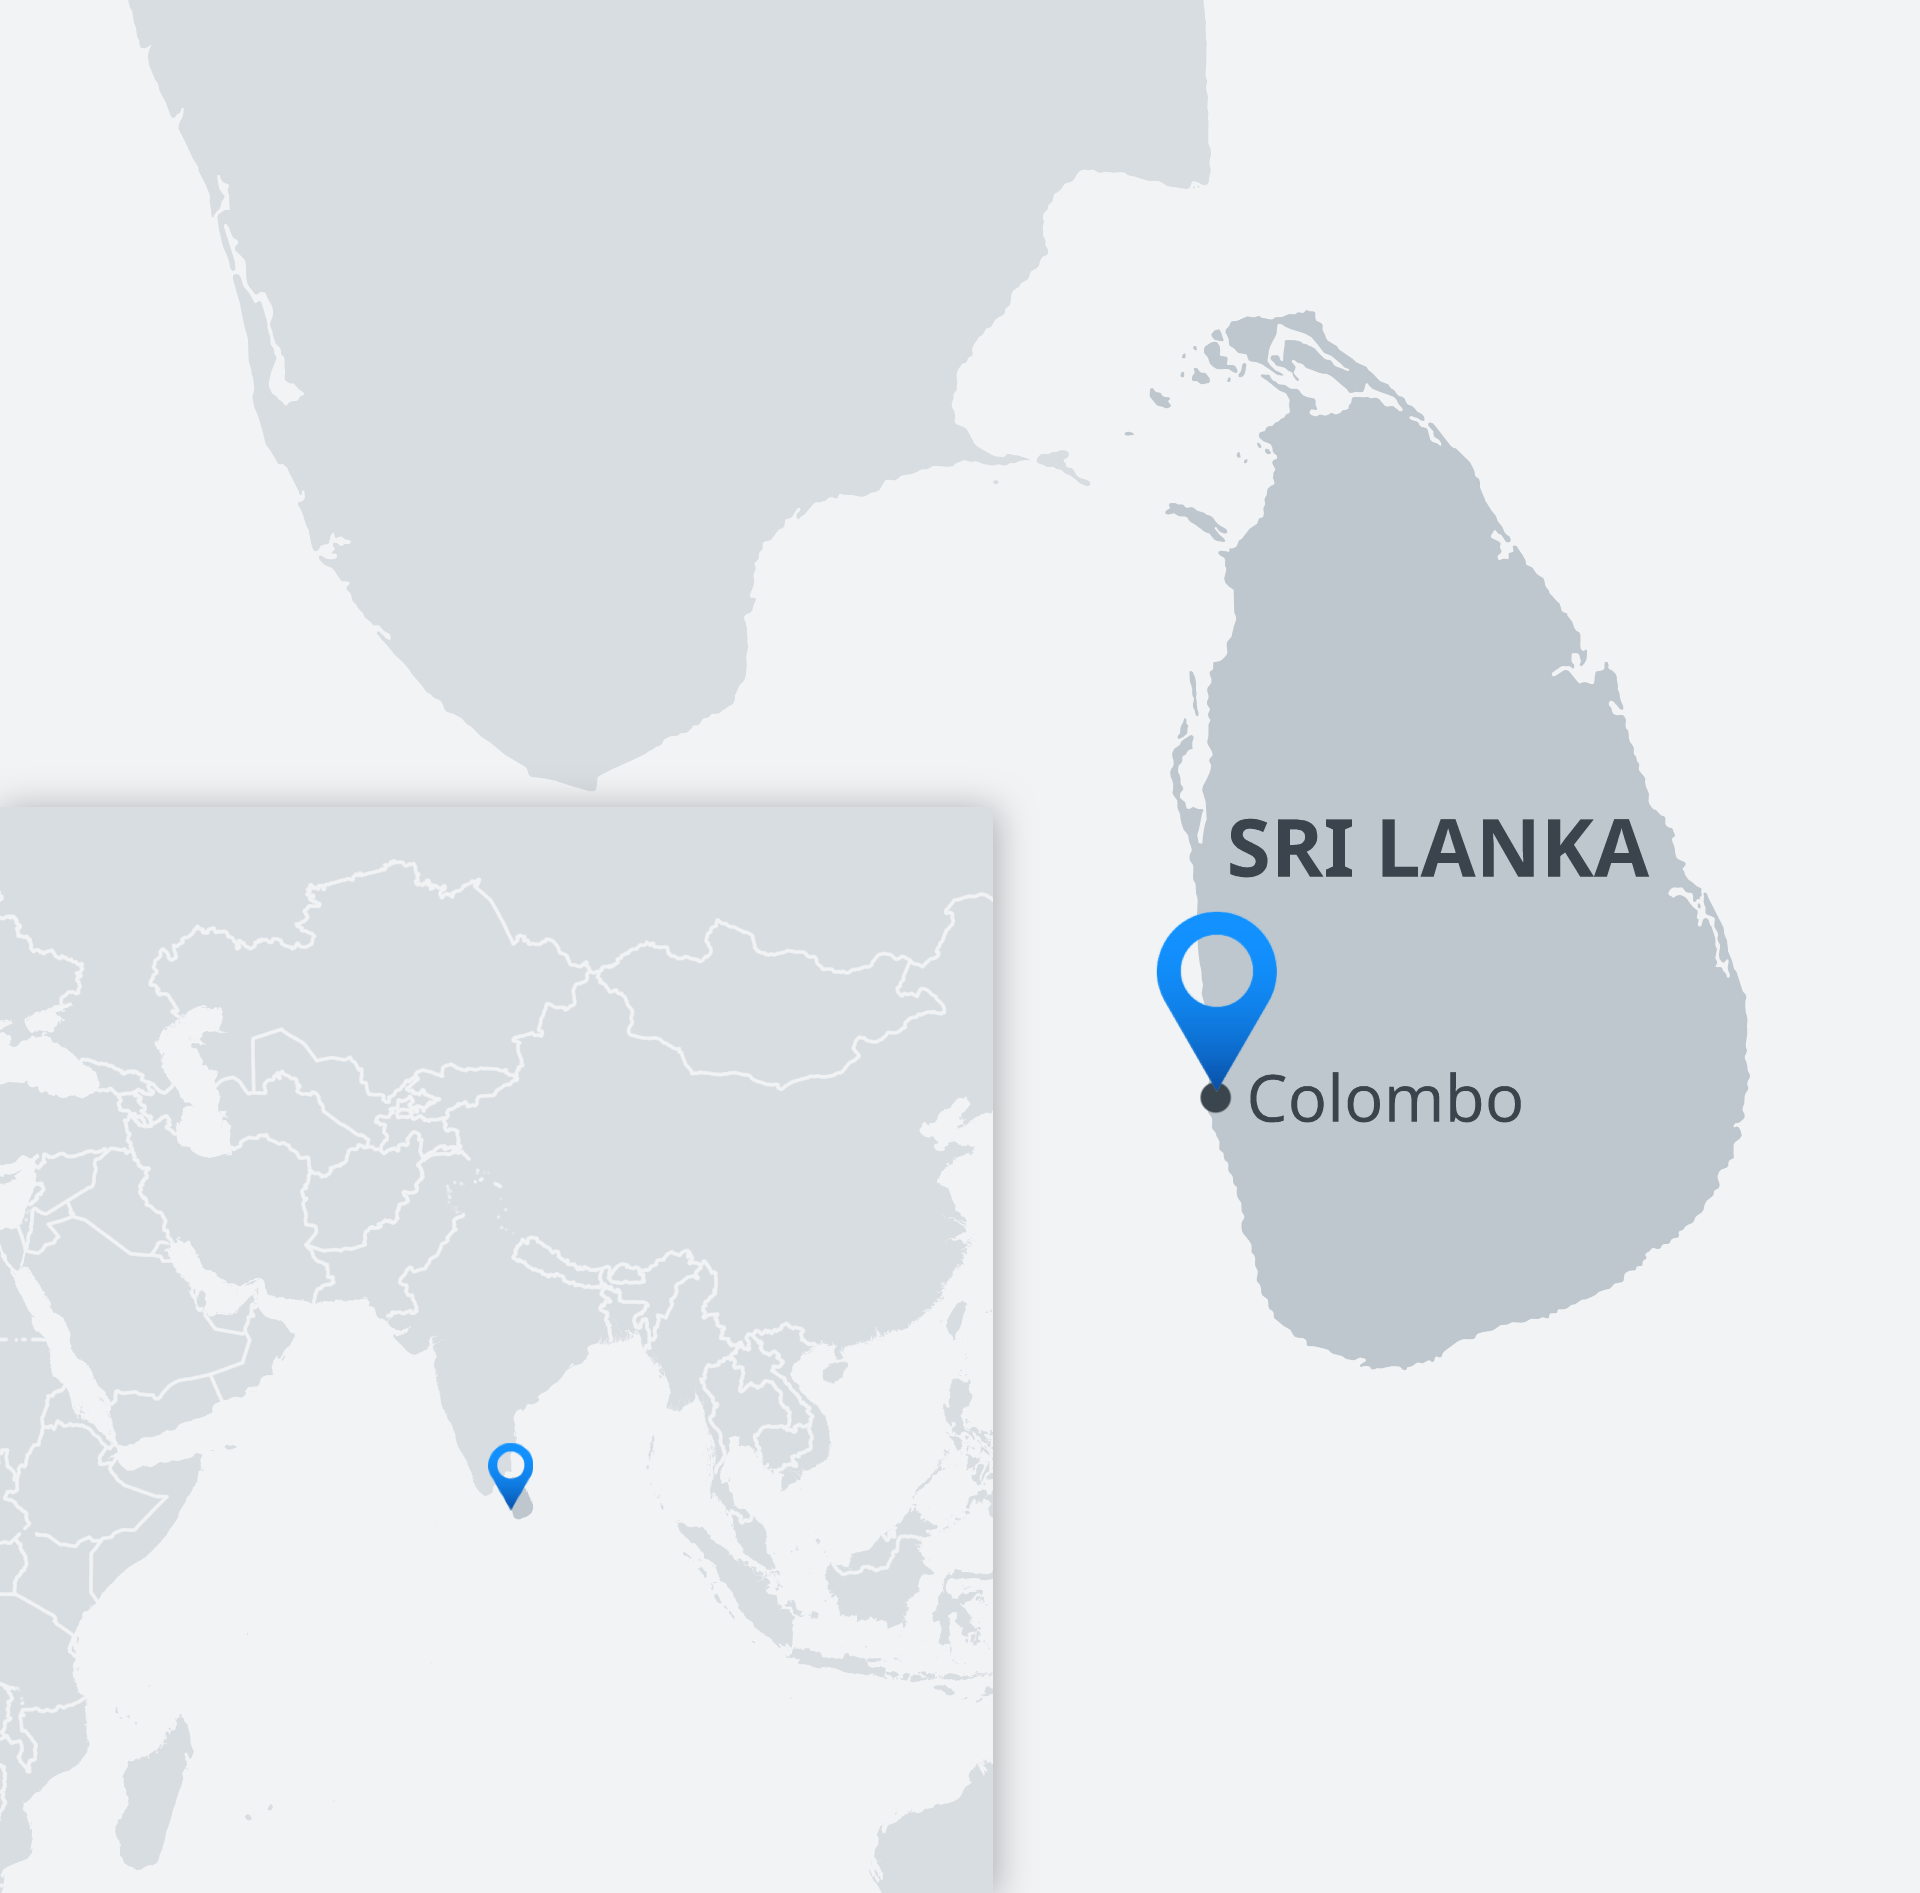 Karte Sri Lanka Colombo EN